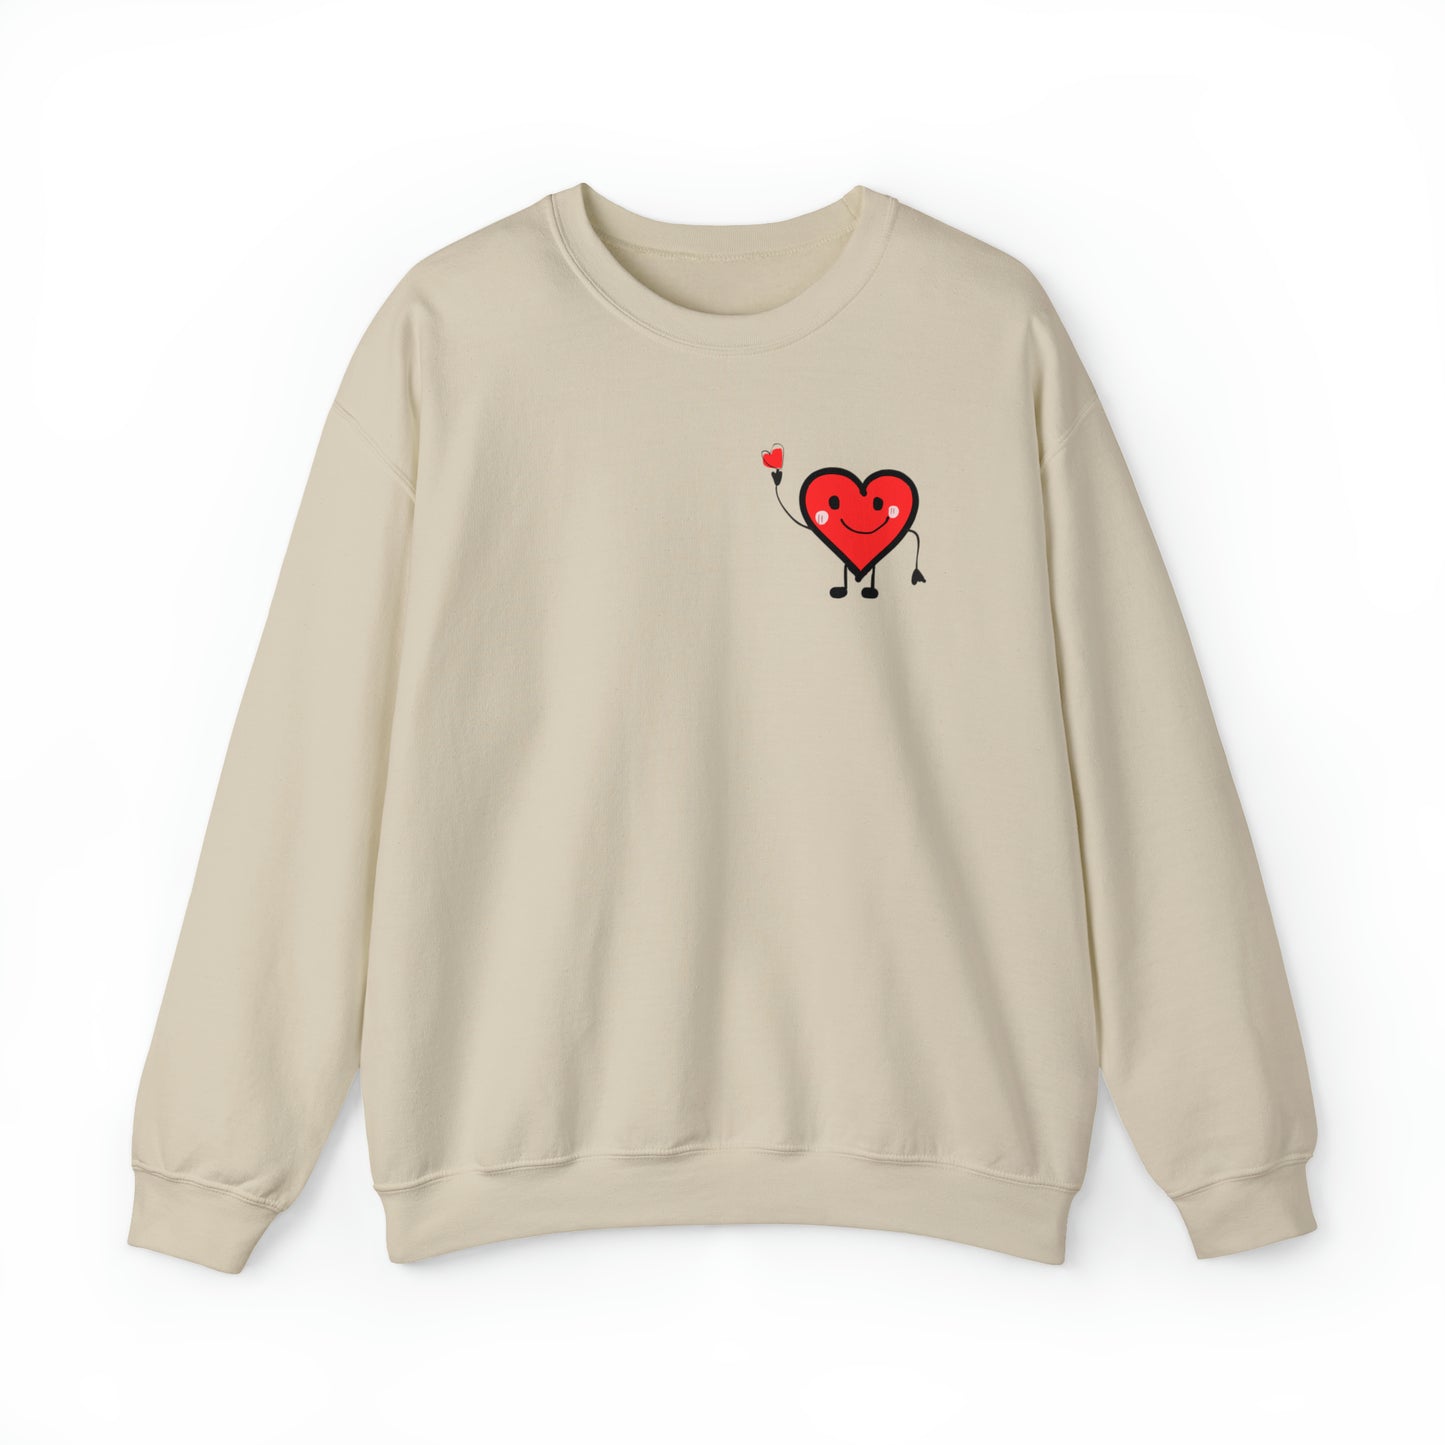 Spread Love Crewneck Sweatshirt